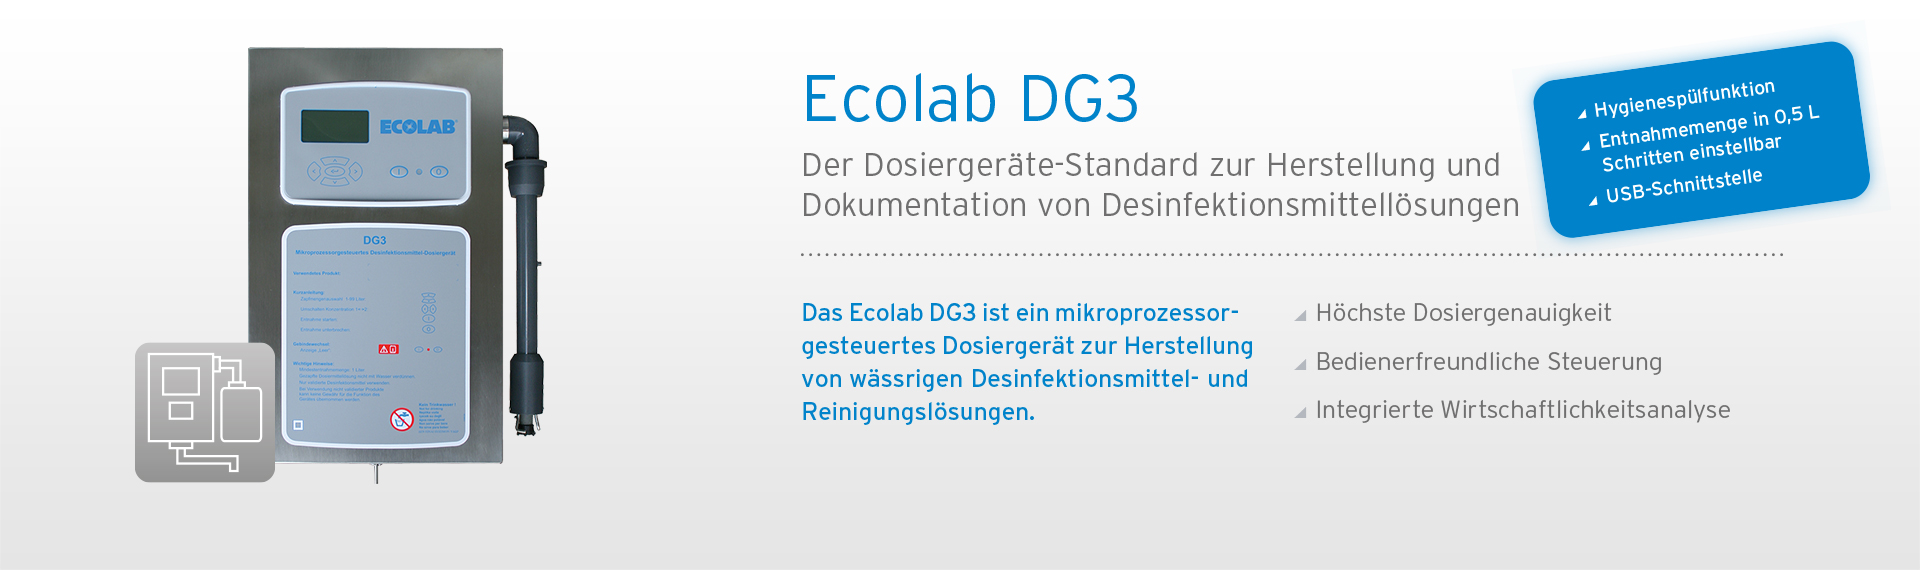 Ecolab DG3